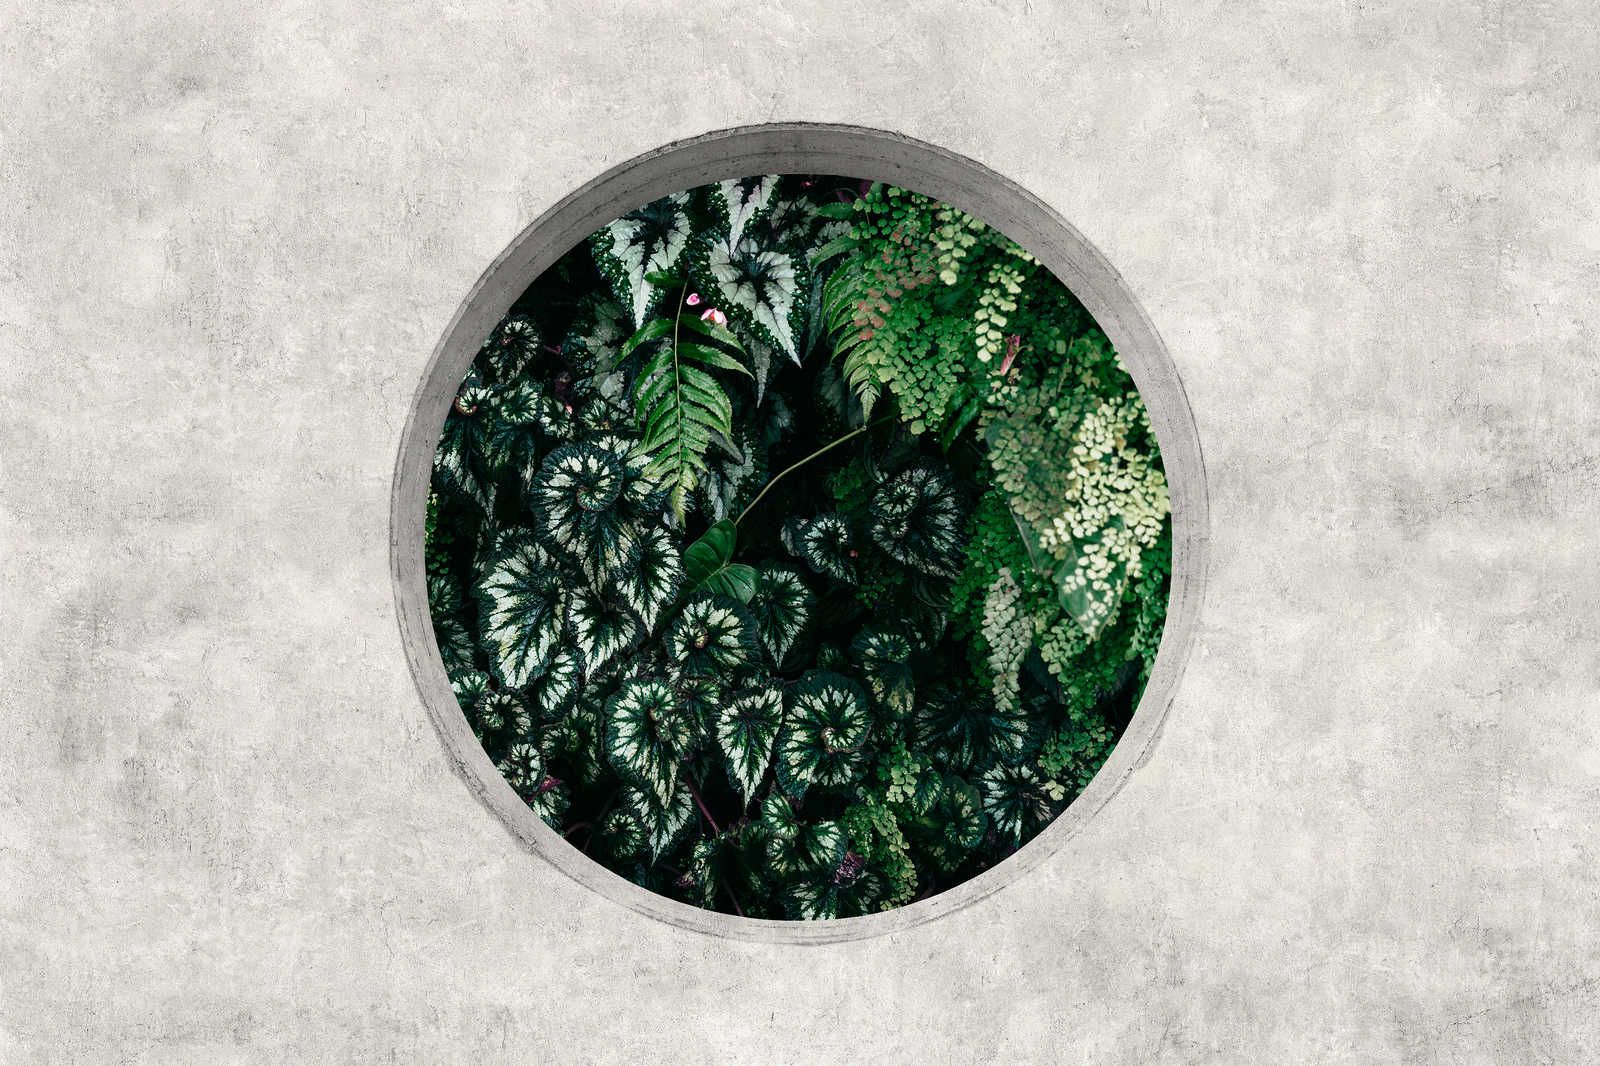             Deep Green 1 - Leinwandbild Fenster Rund mit Dschungel Pflanzen – 0,90 m x 0,60 m
        